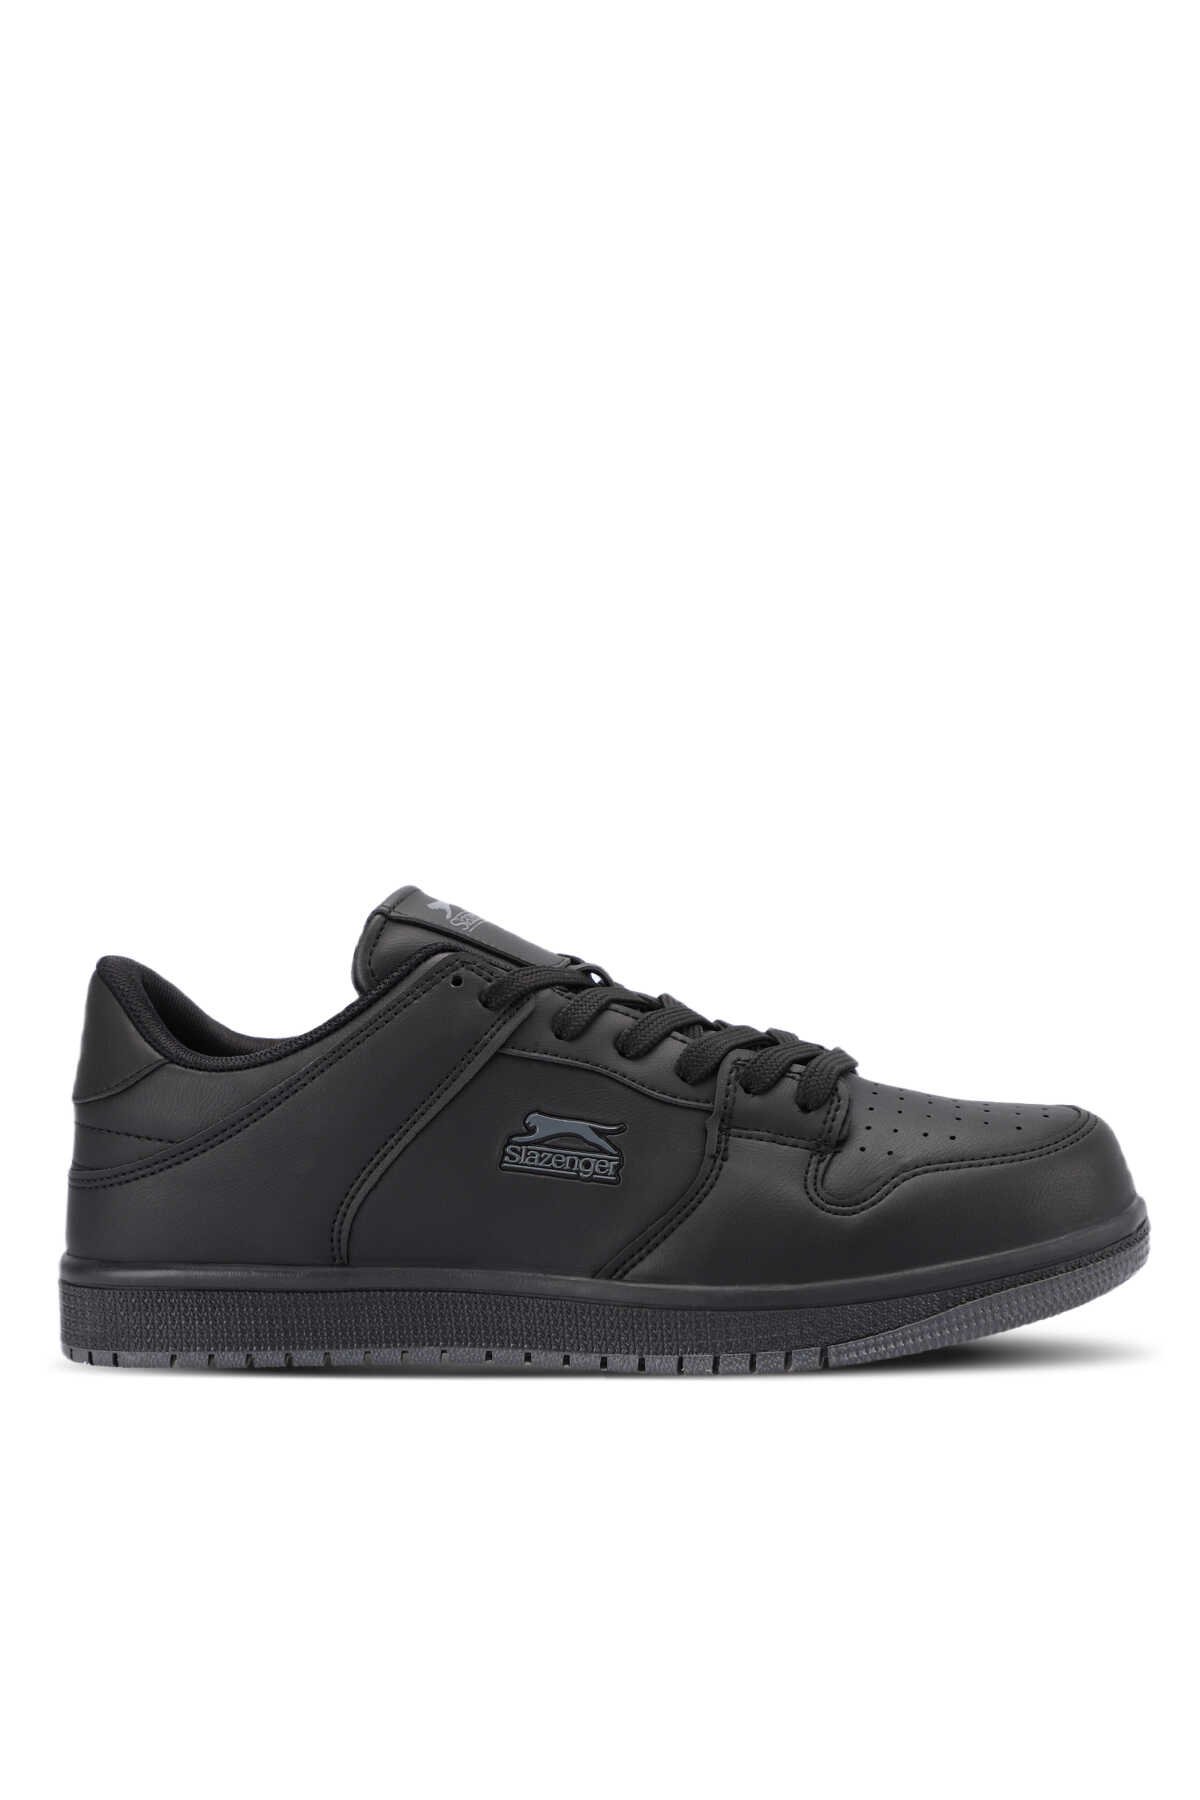 Slazenger - Slazenger LABOR Sneaker Erkek Ayakkabı Siyah / Siyah